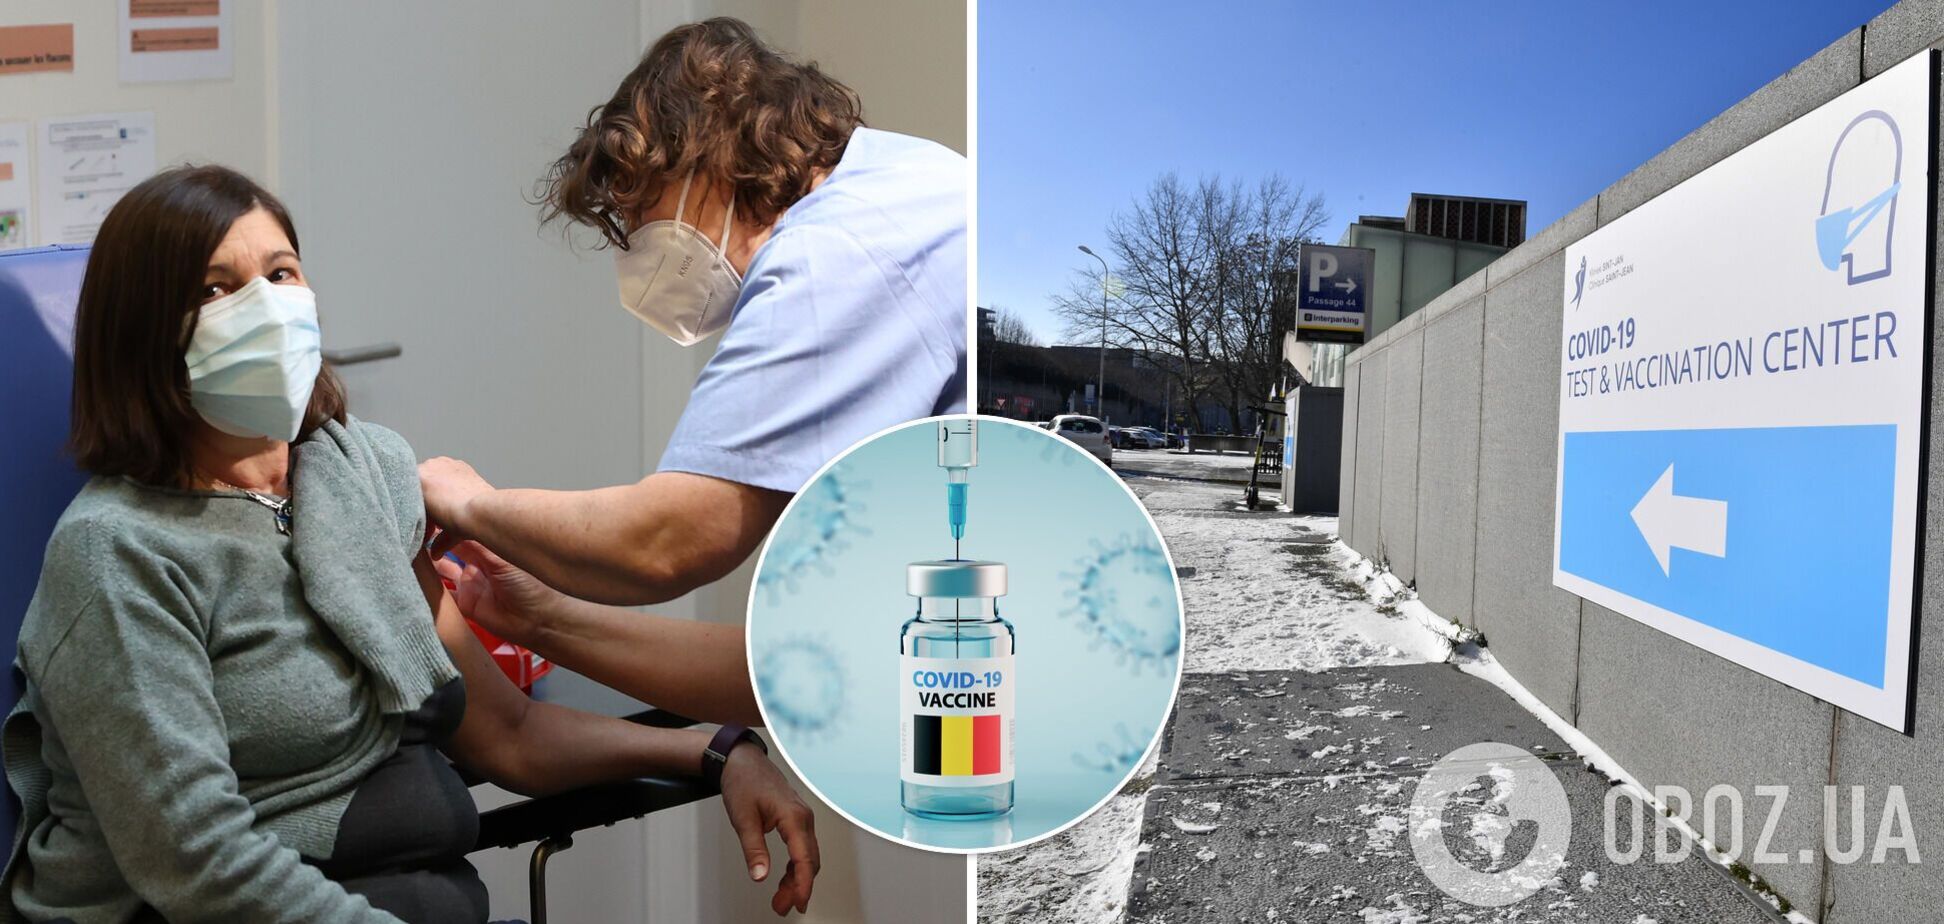 За медленную вакцинацию от COVID-19 власть Бельгии критикуют, – украинка рассказала об иммунизации